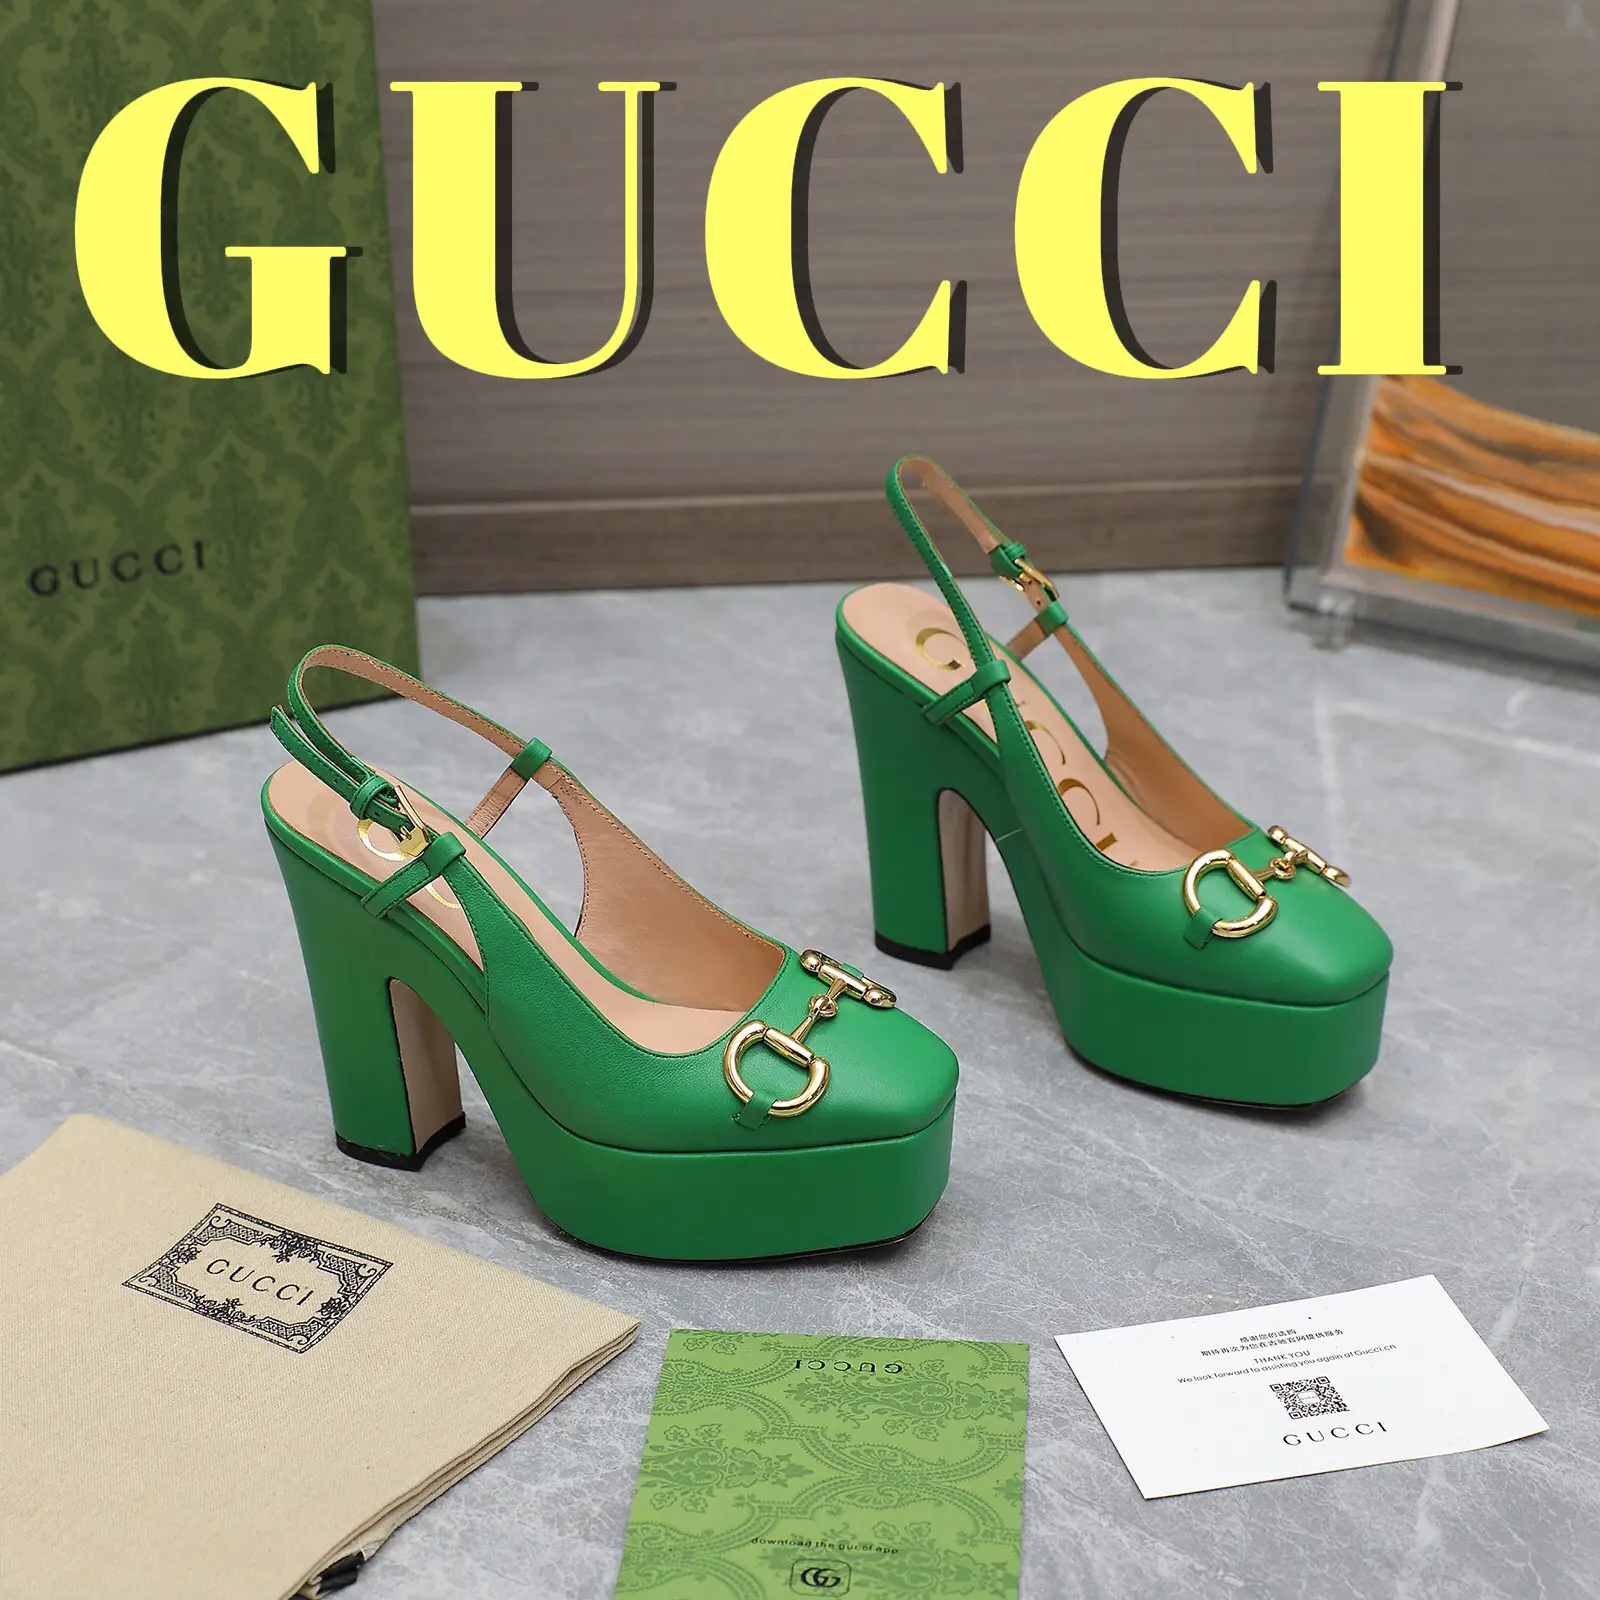 gucci slides outfit women - Lemon8 Search